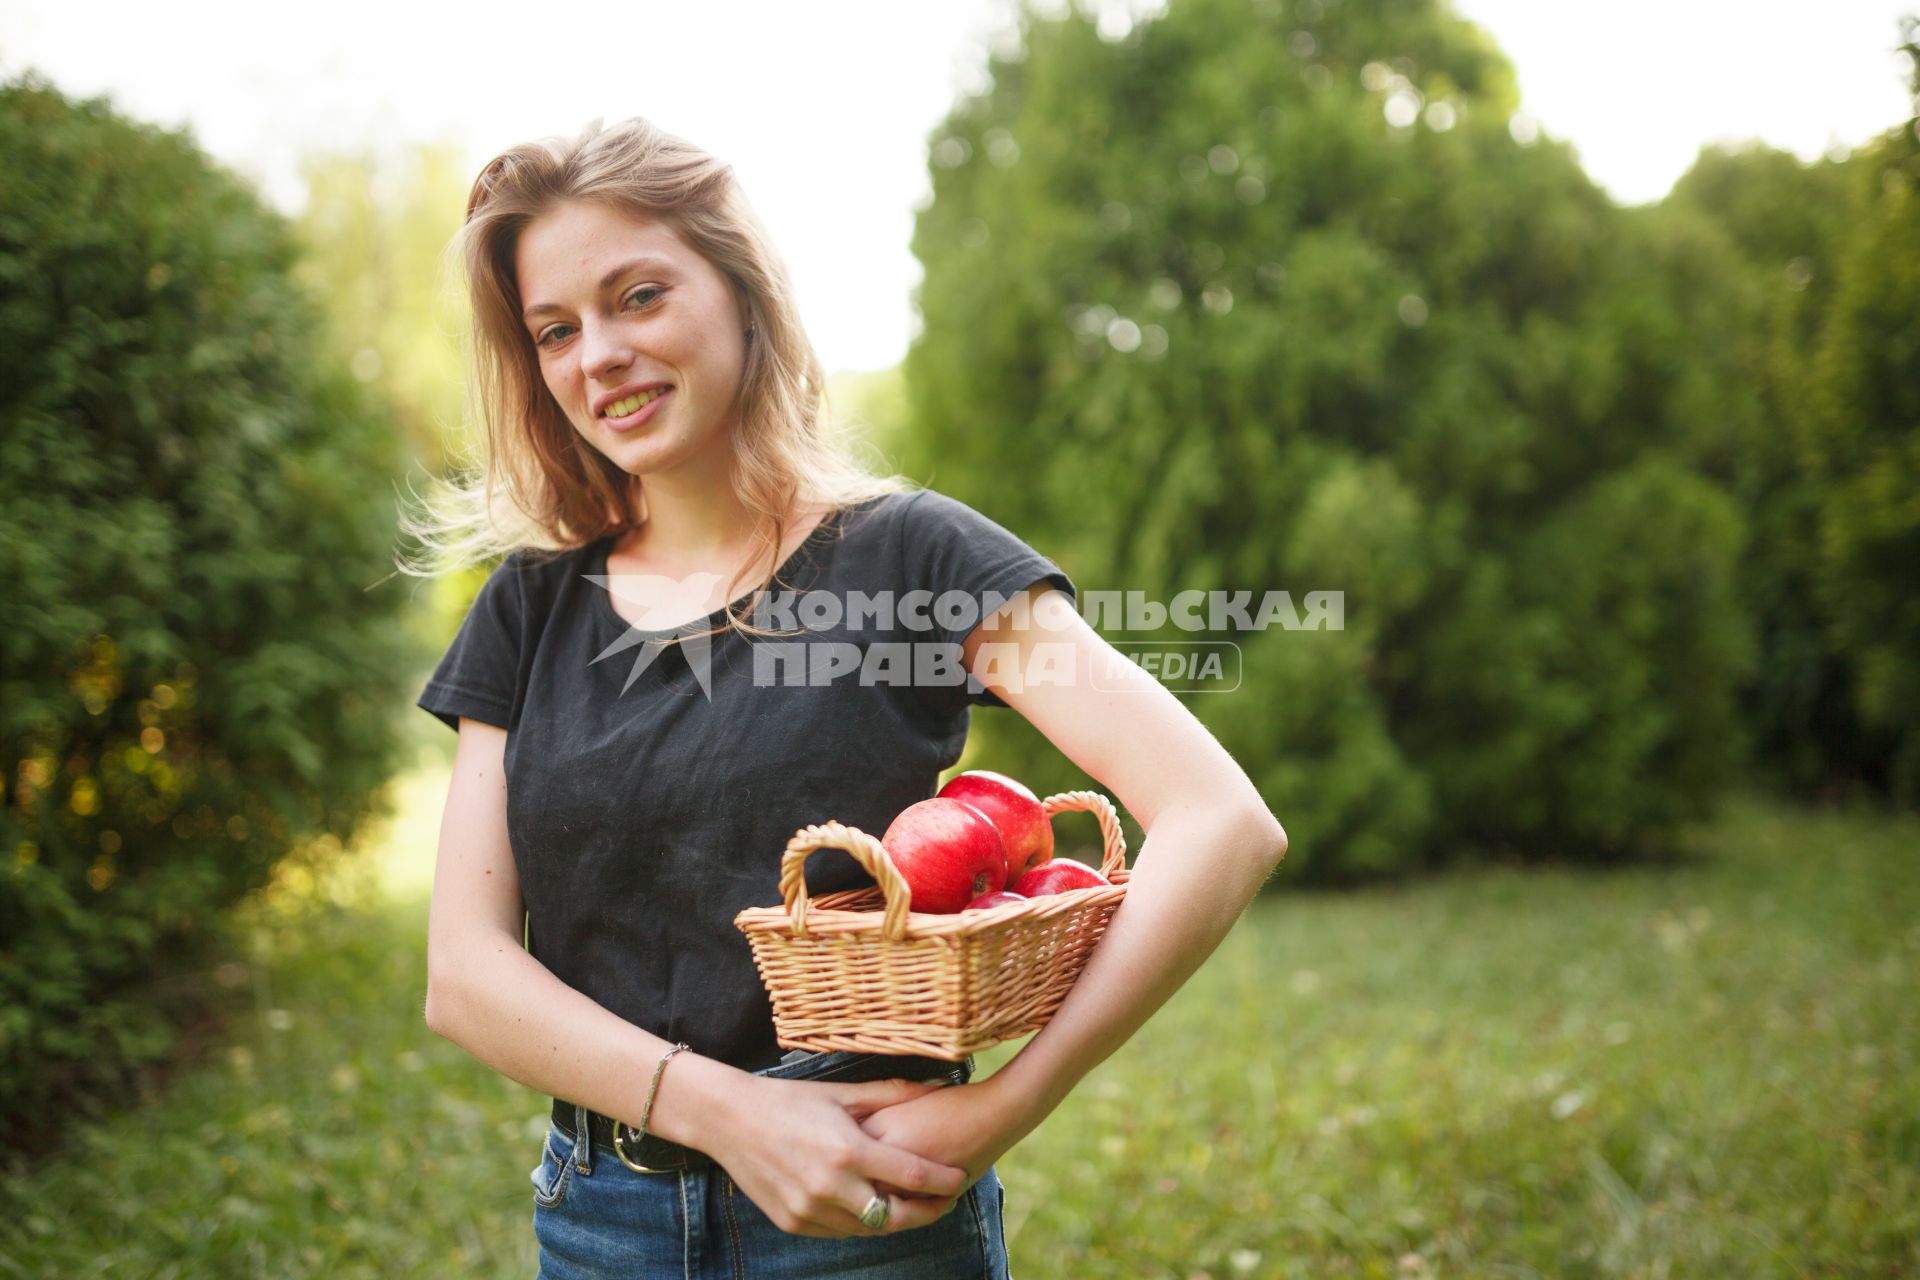 Ставрополь. Девушка с яблоками.